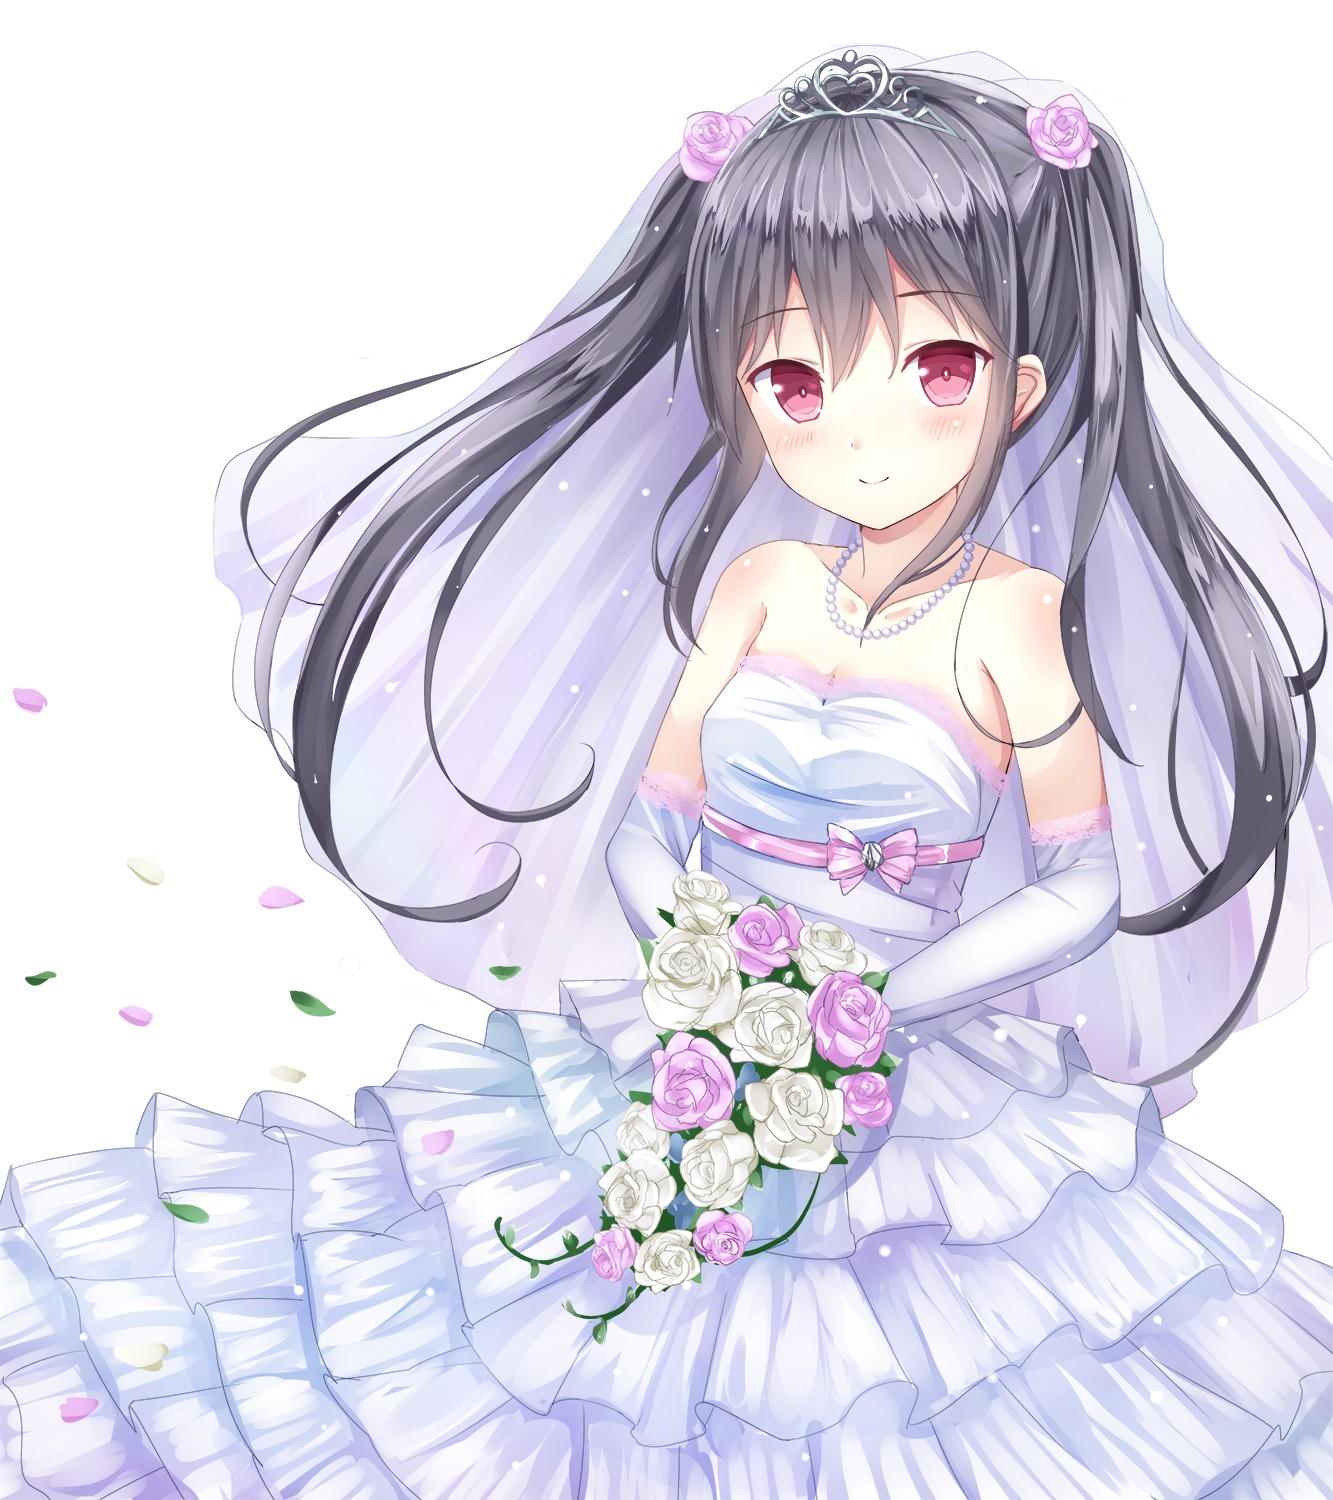 flowers, red eyes, wedding dresses, roses, anime girls